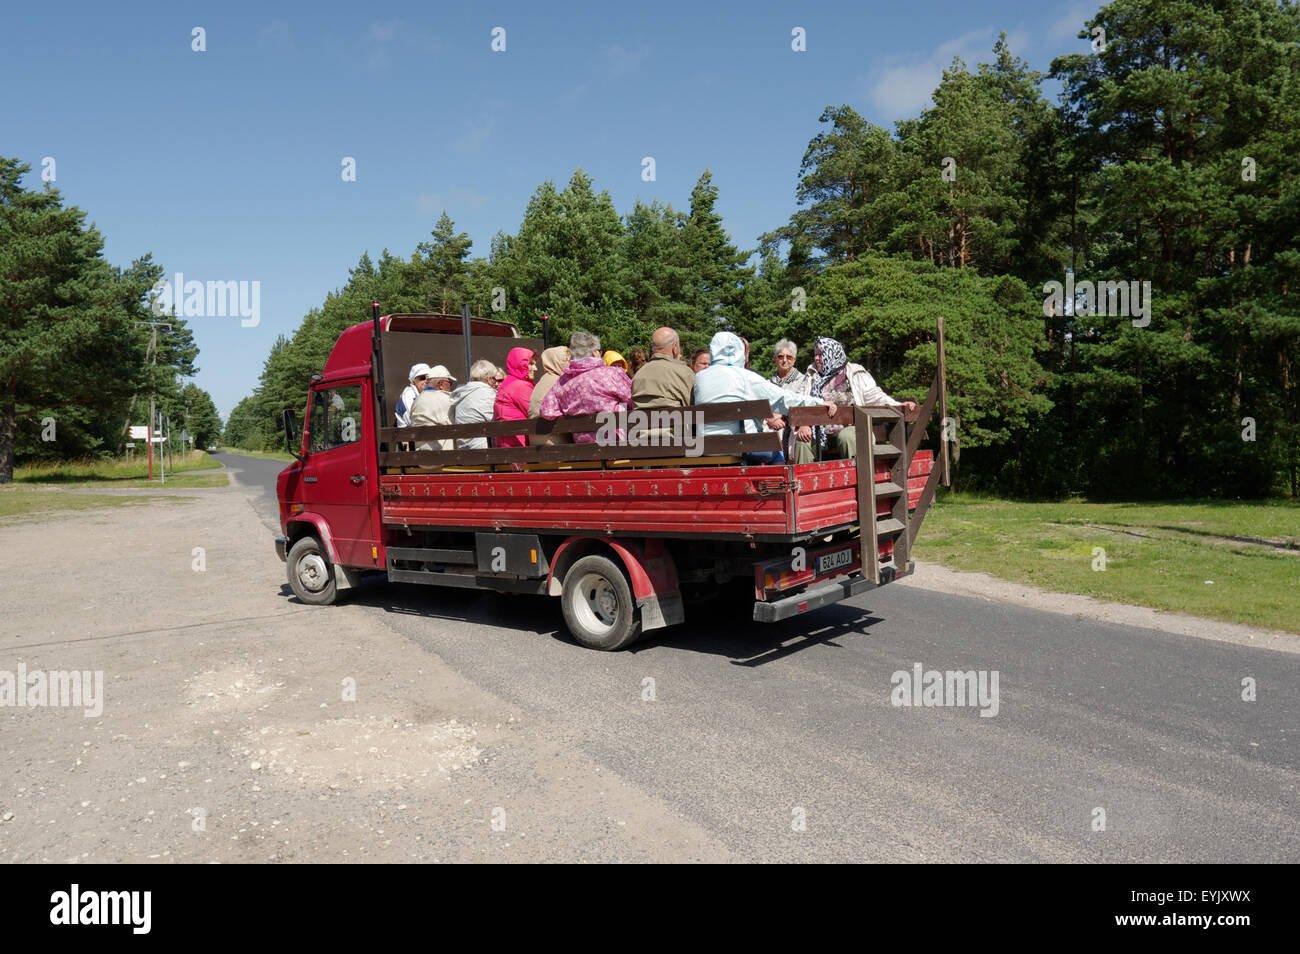 Trasporto turistico sull'isola Kihnu. Estonia il 24 luglio, 2015 Foto Stock